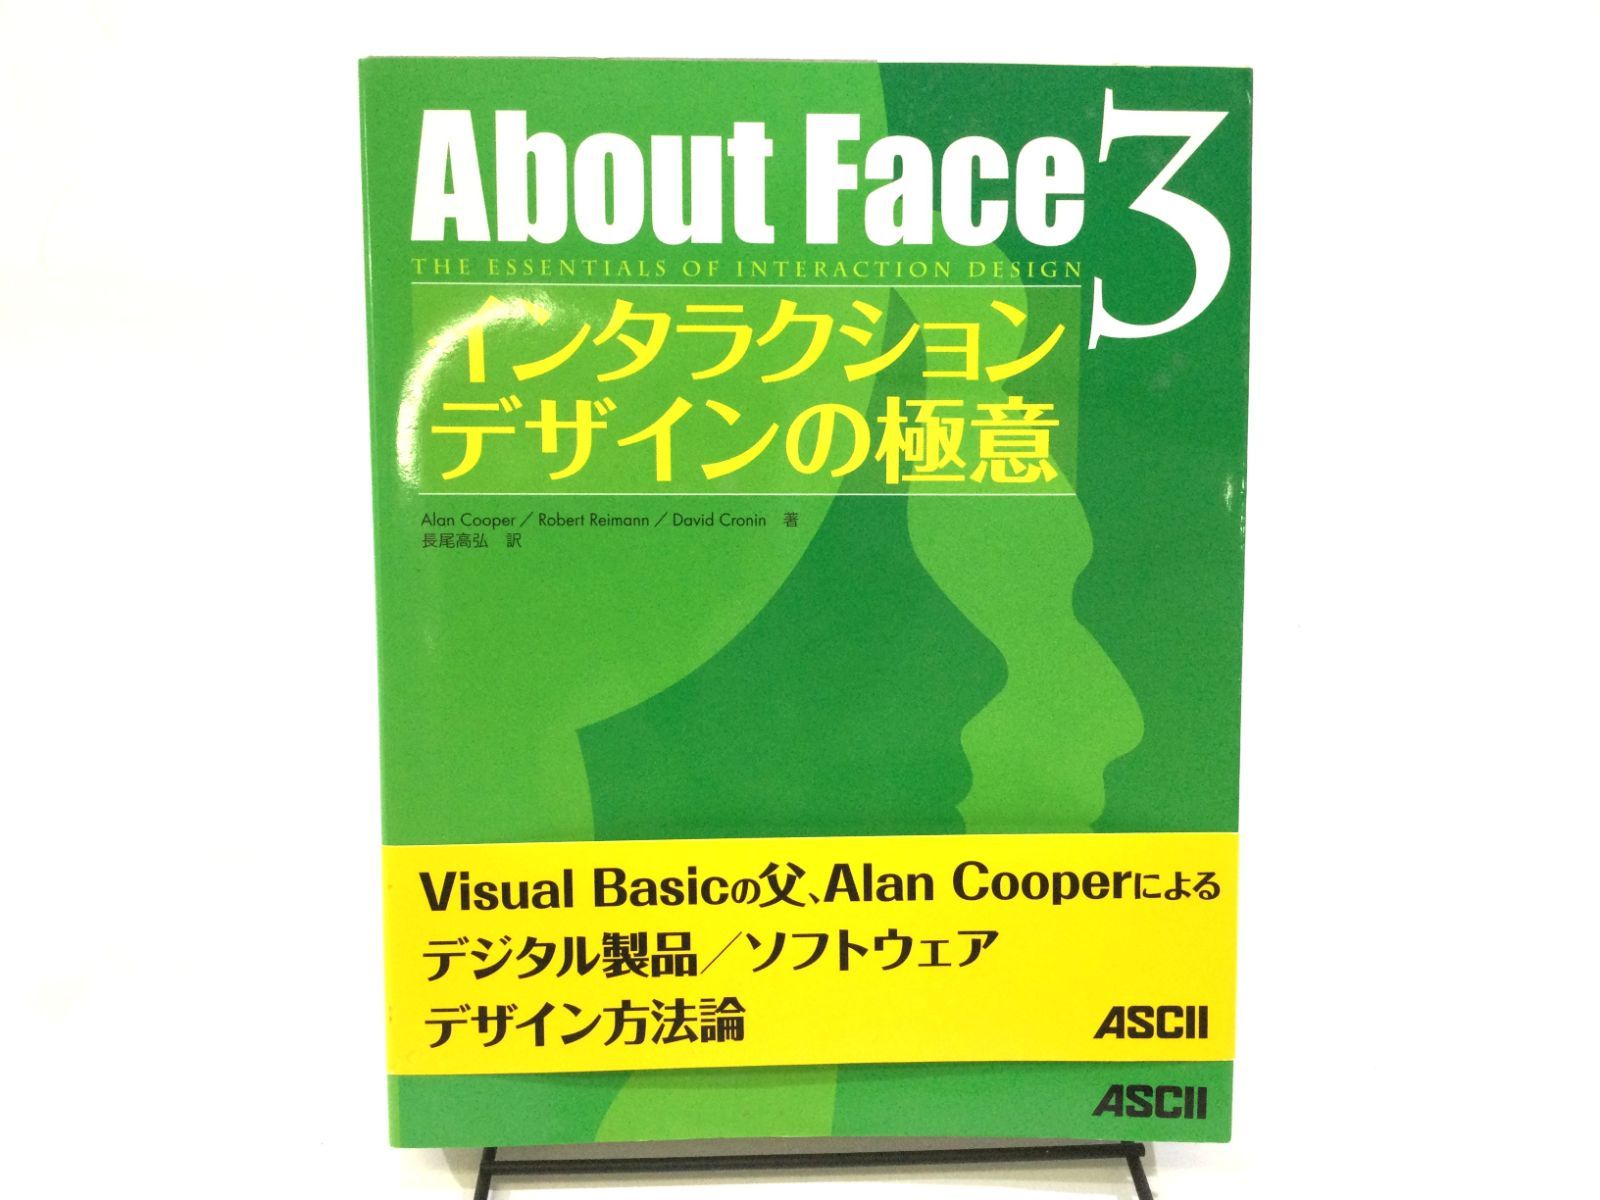 B-0388]About Face 3 インタラクションデザインの極意 - D.R.shop